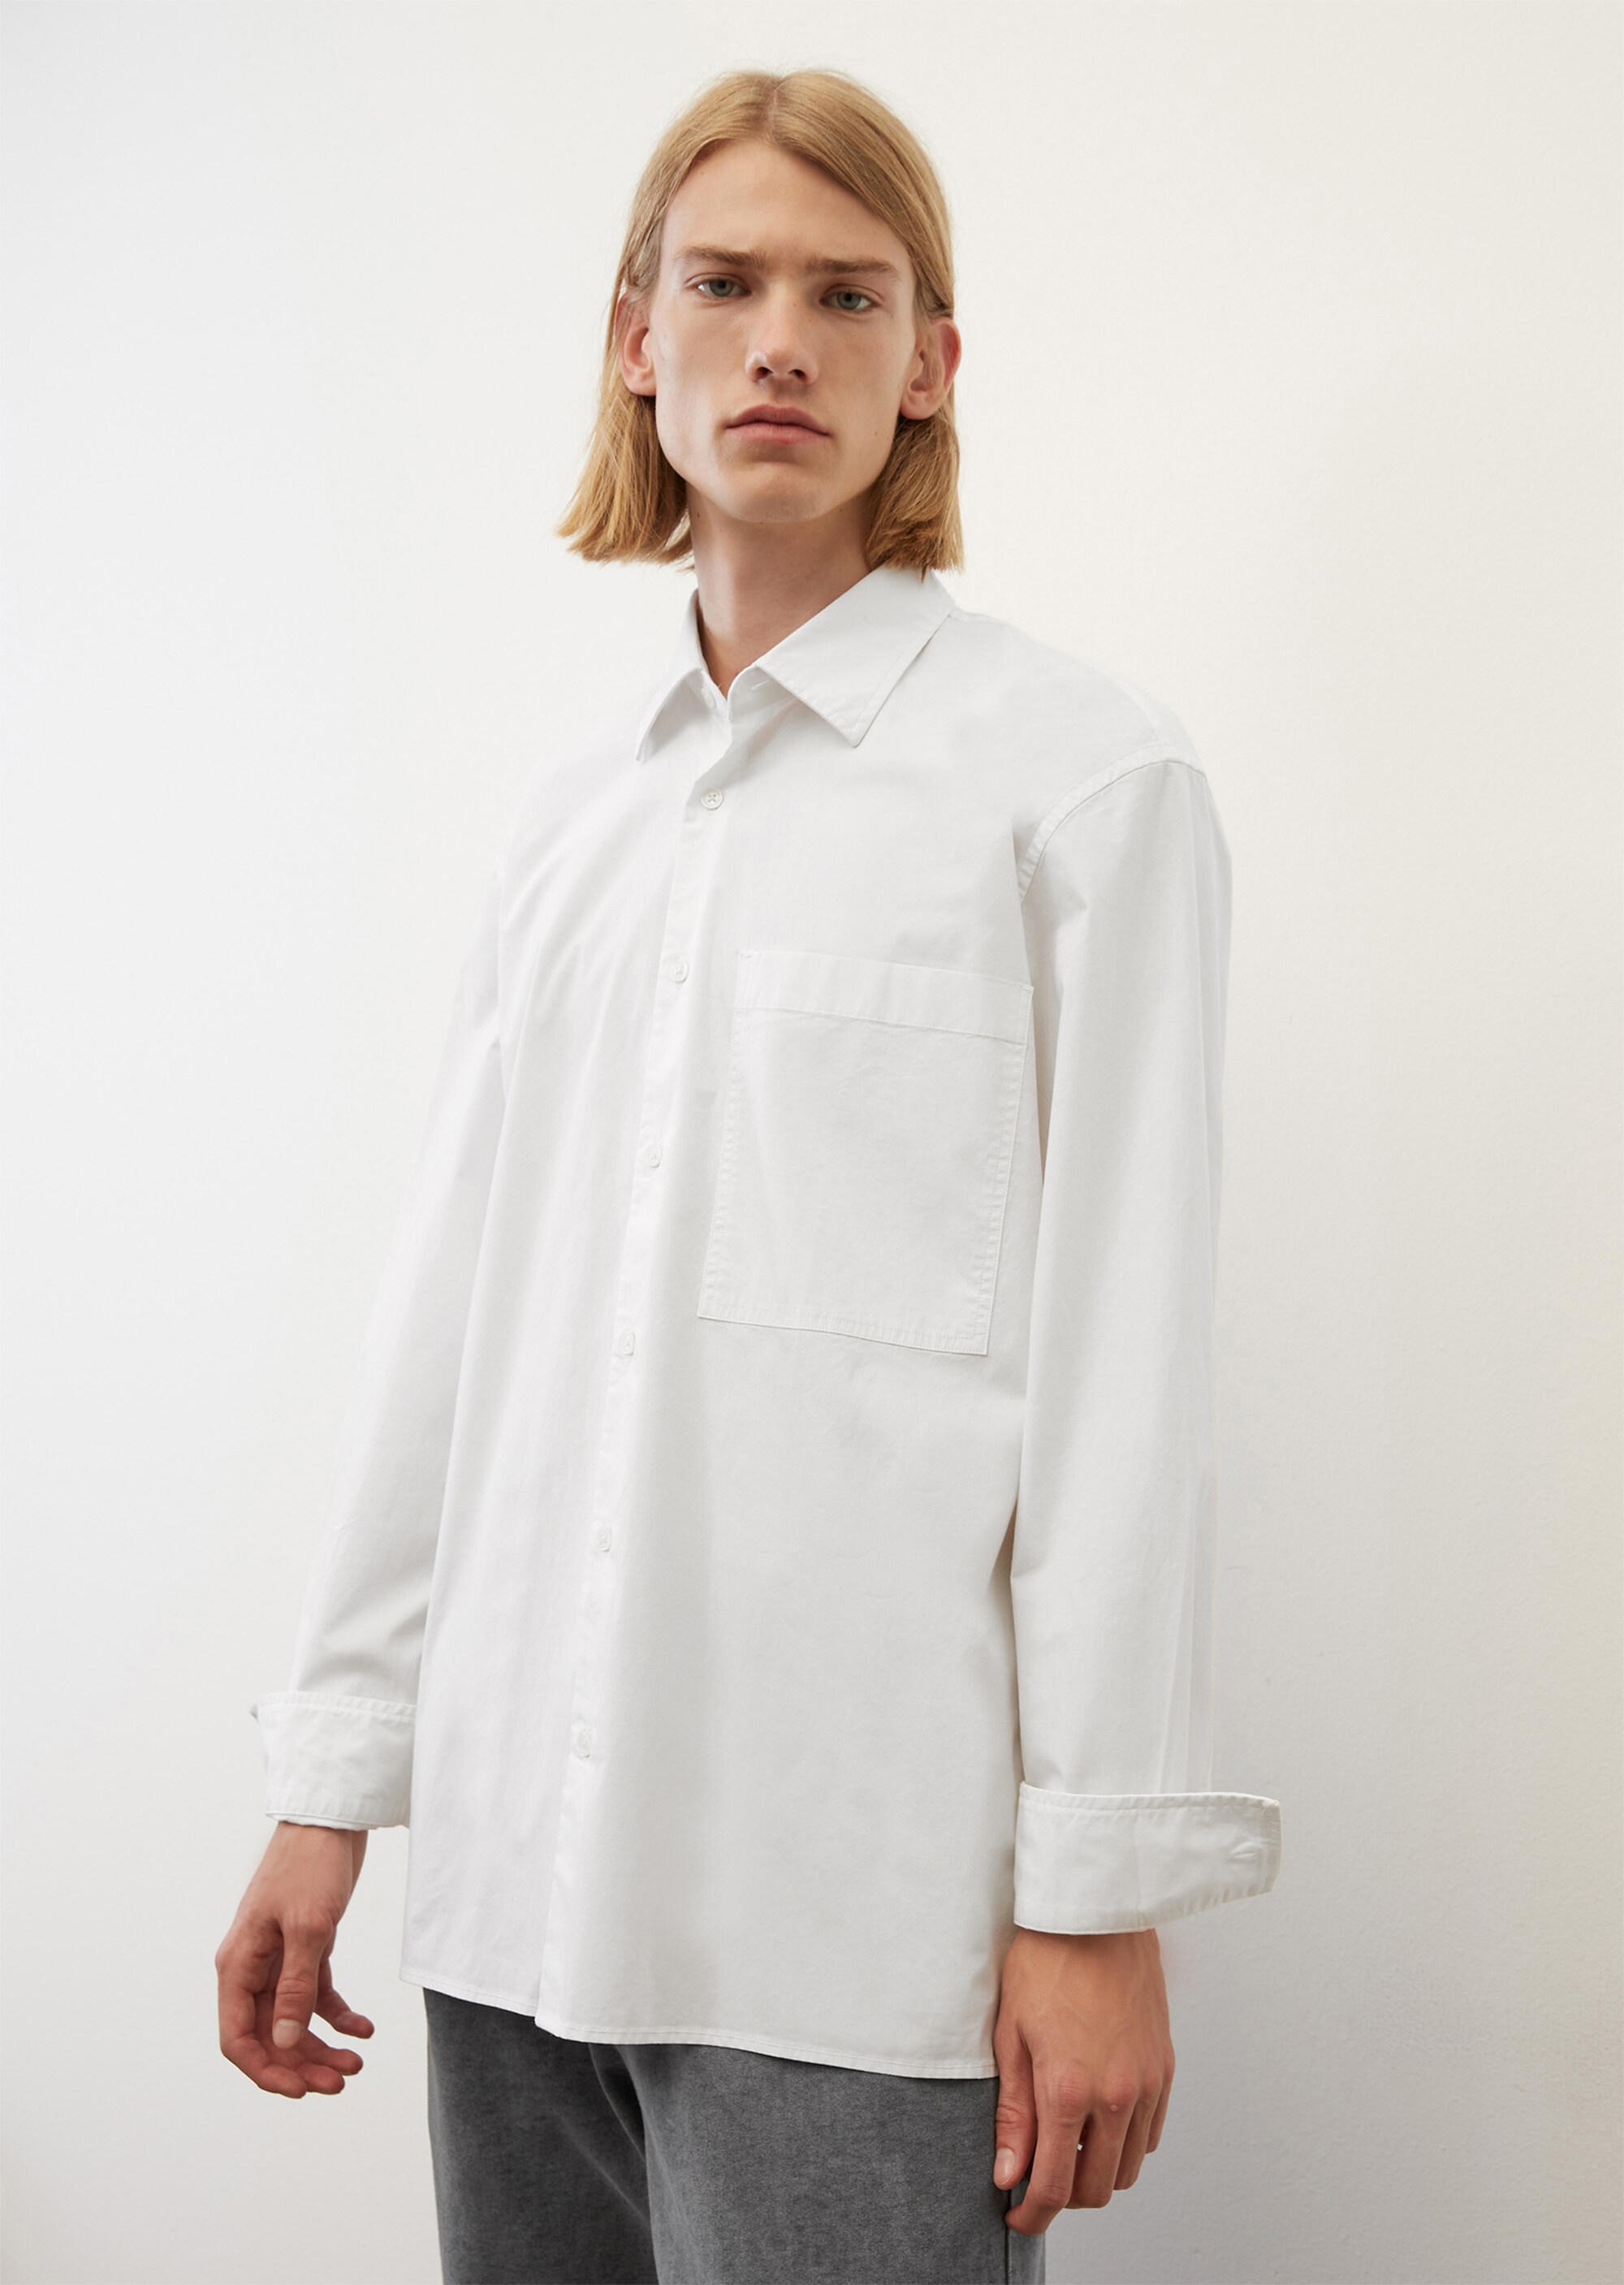 Moda Camisas Mangas largas Asos Manga larga blanco puro elegante 